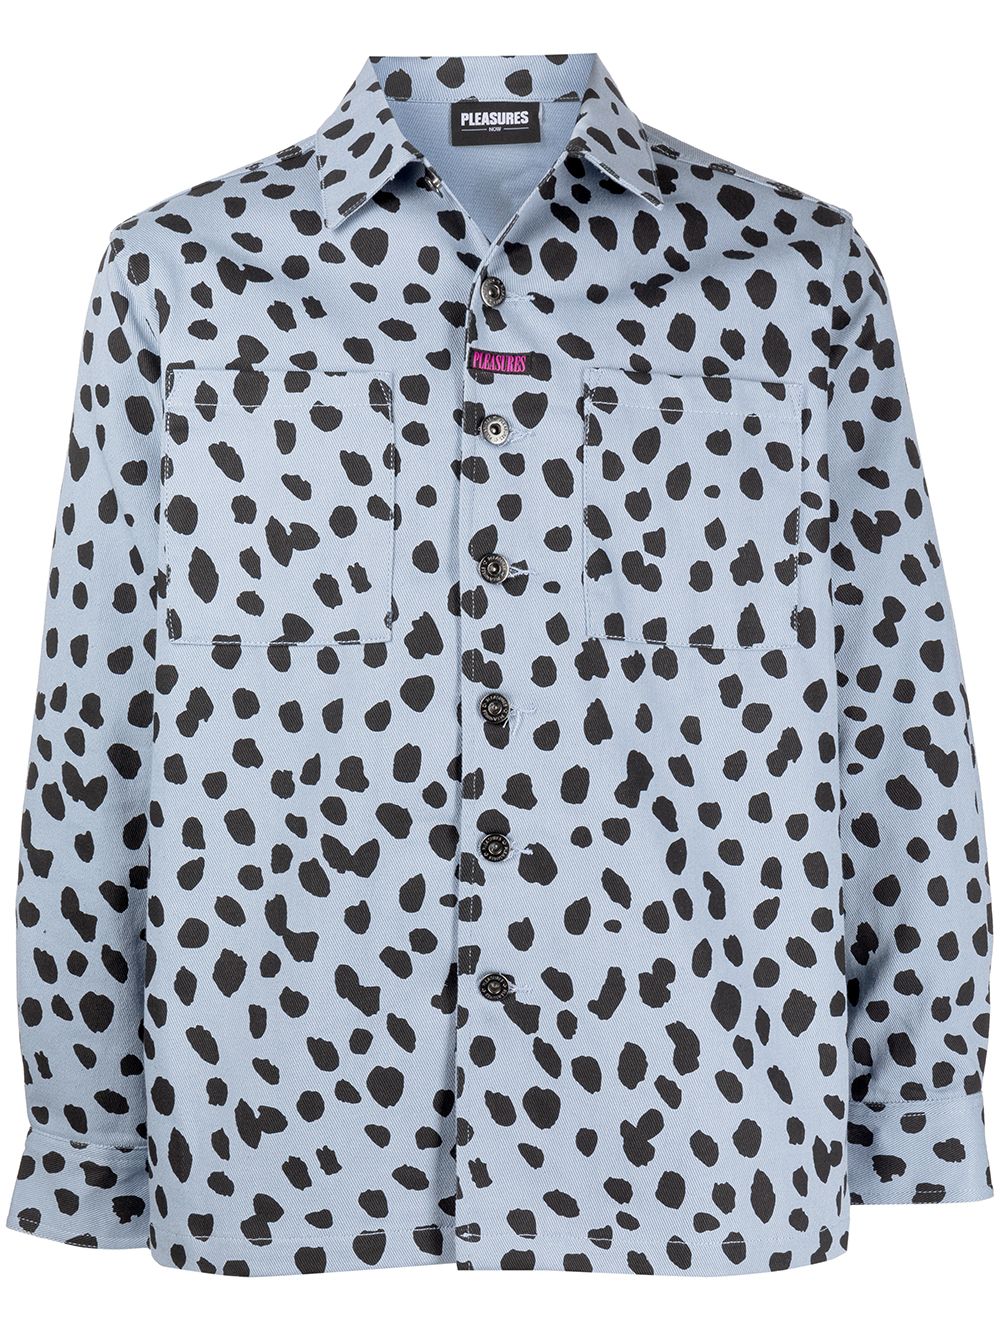 фото Pleasures куртка-рубашка dalmatian